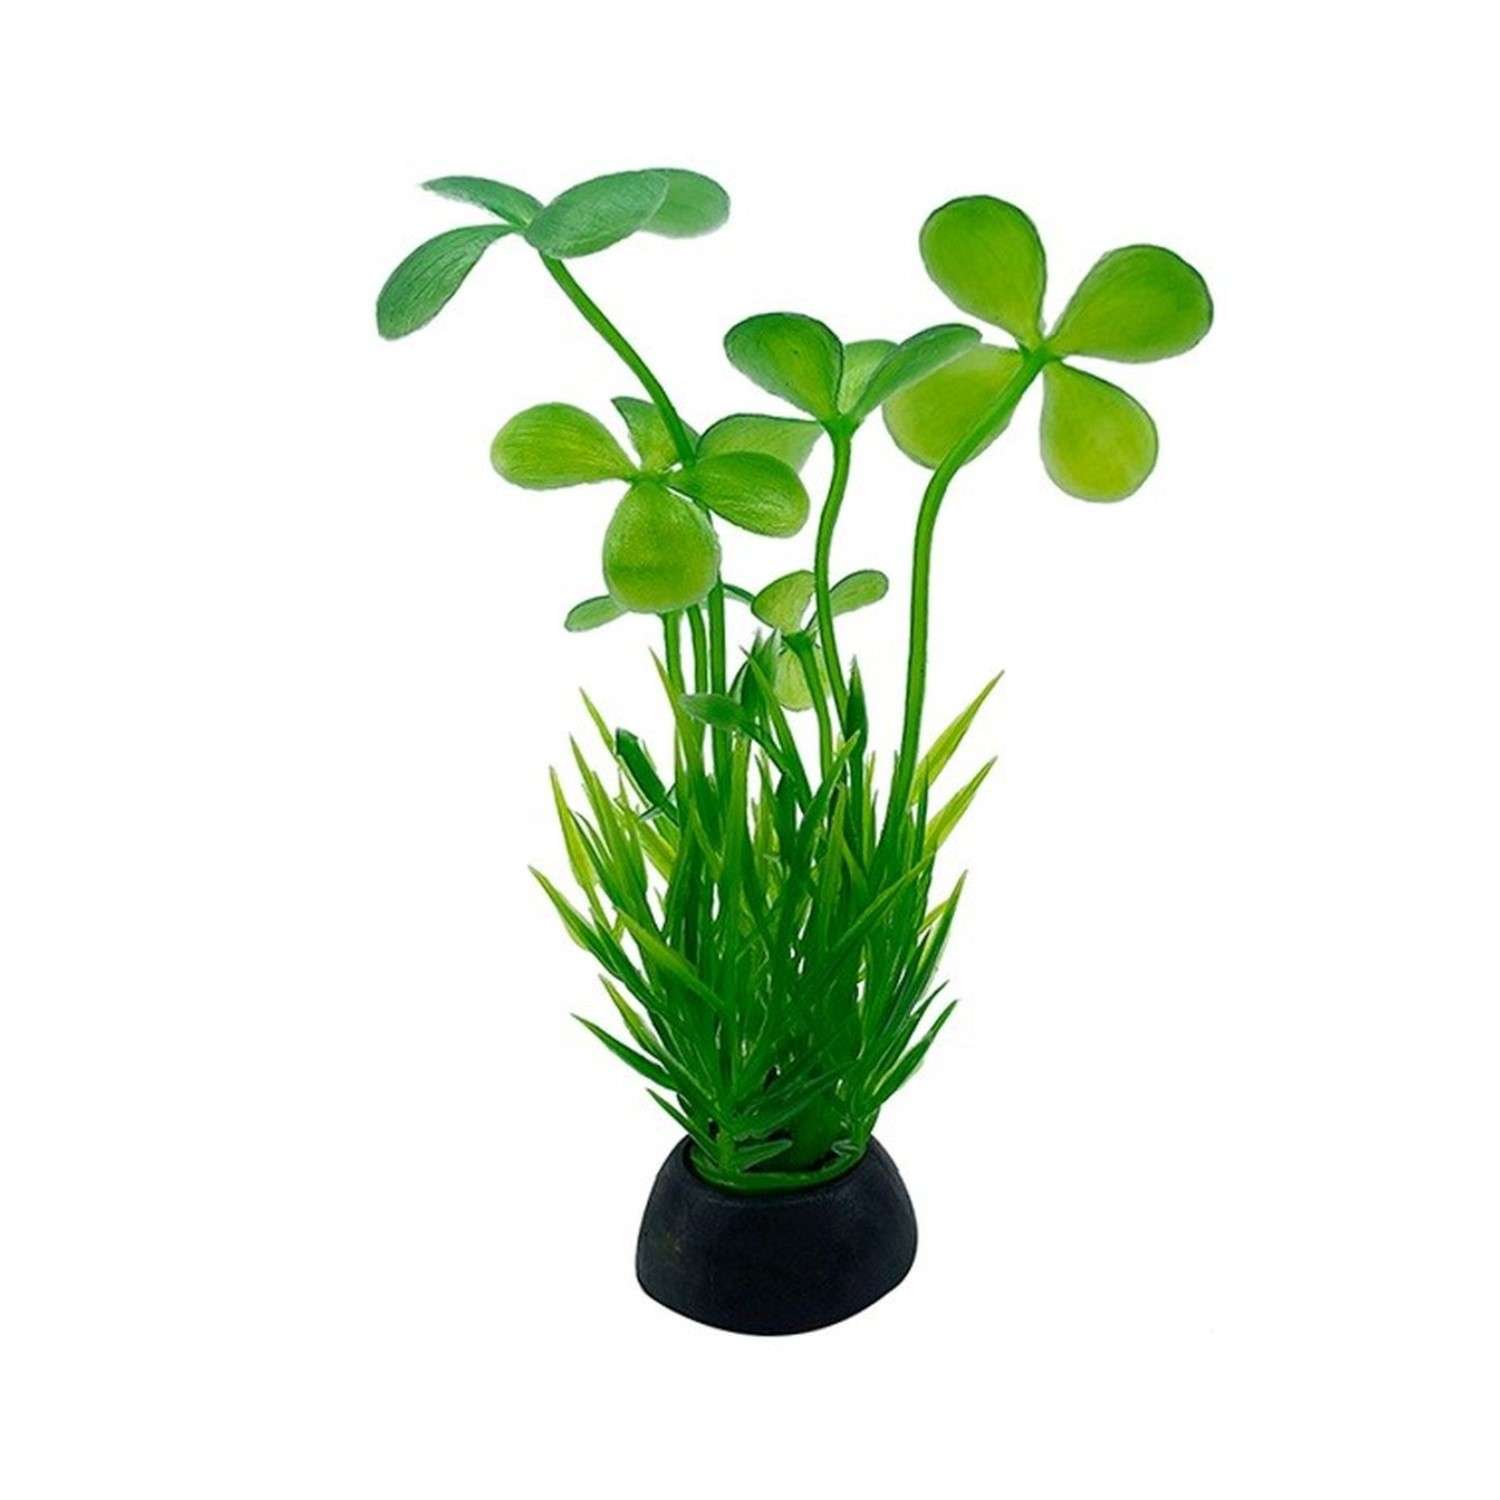 Аквариумное растение Rabizy искусственное 2.5х10 см - фото 2